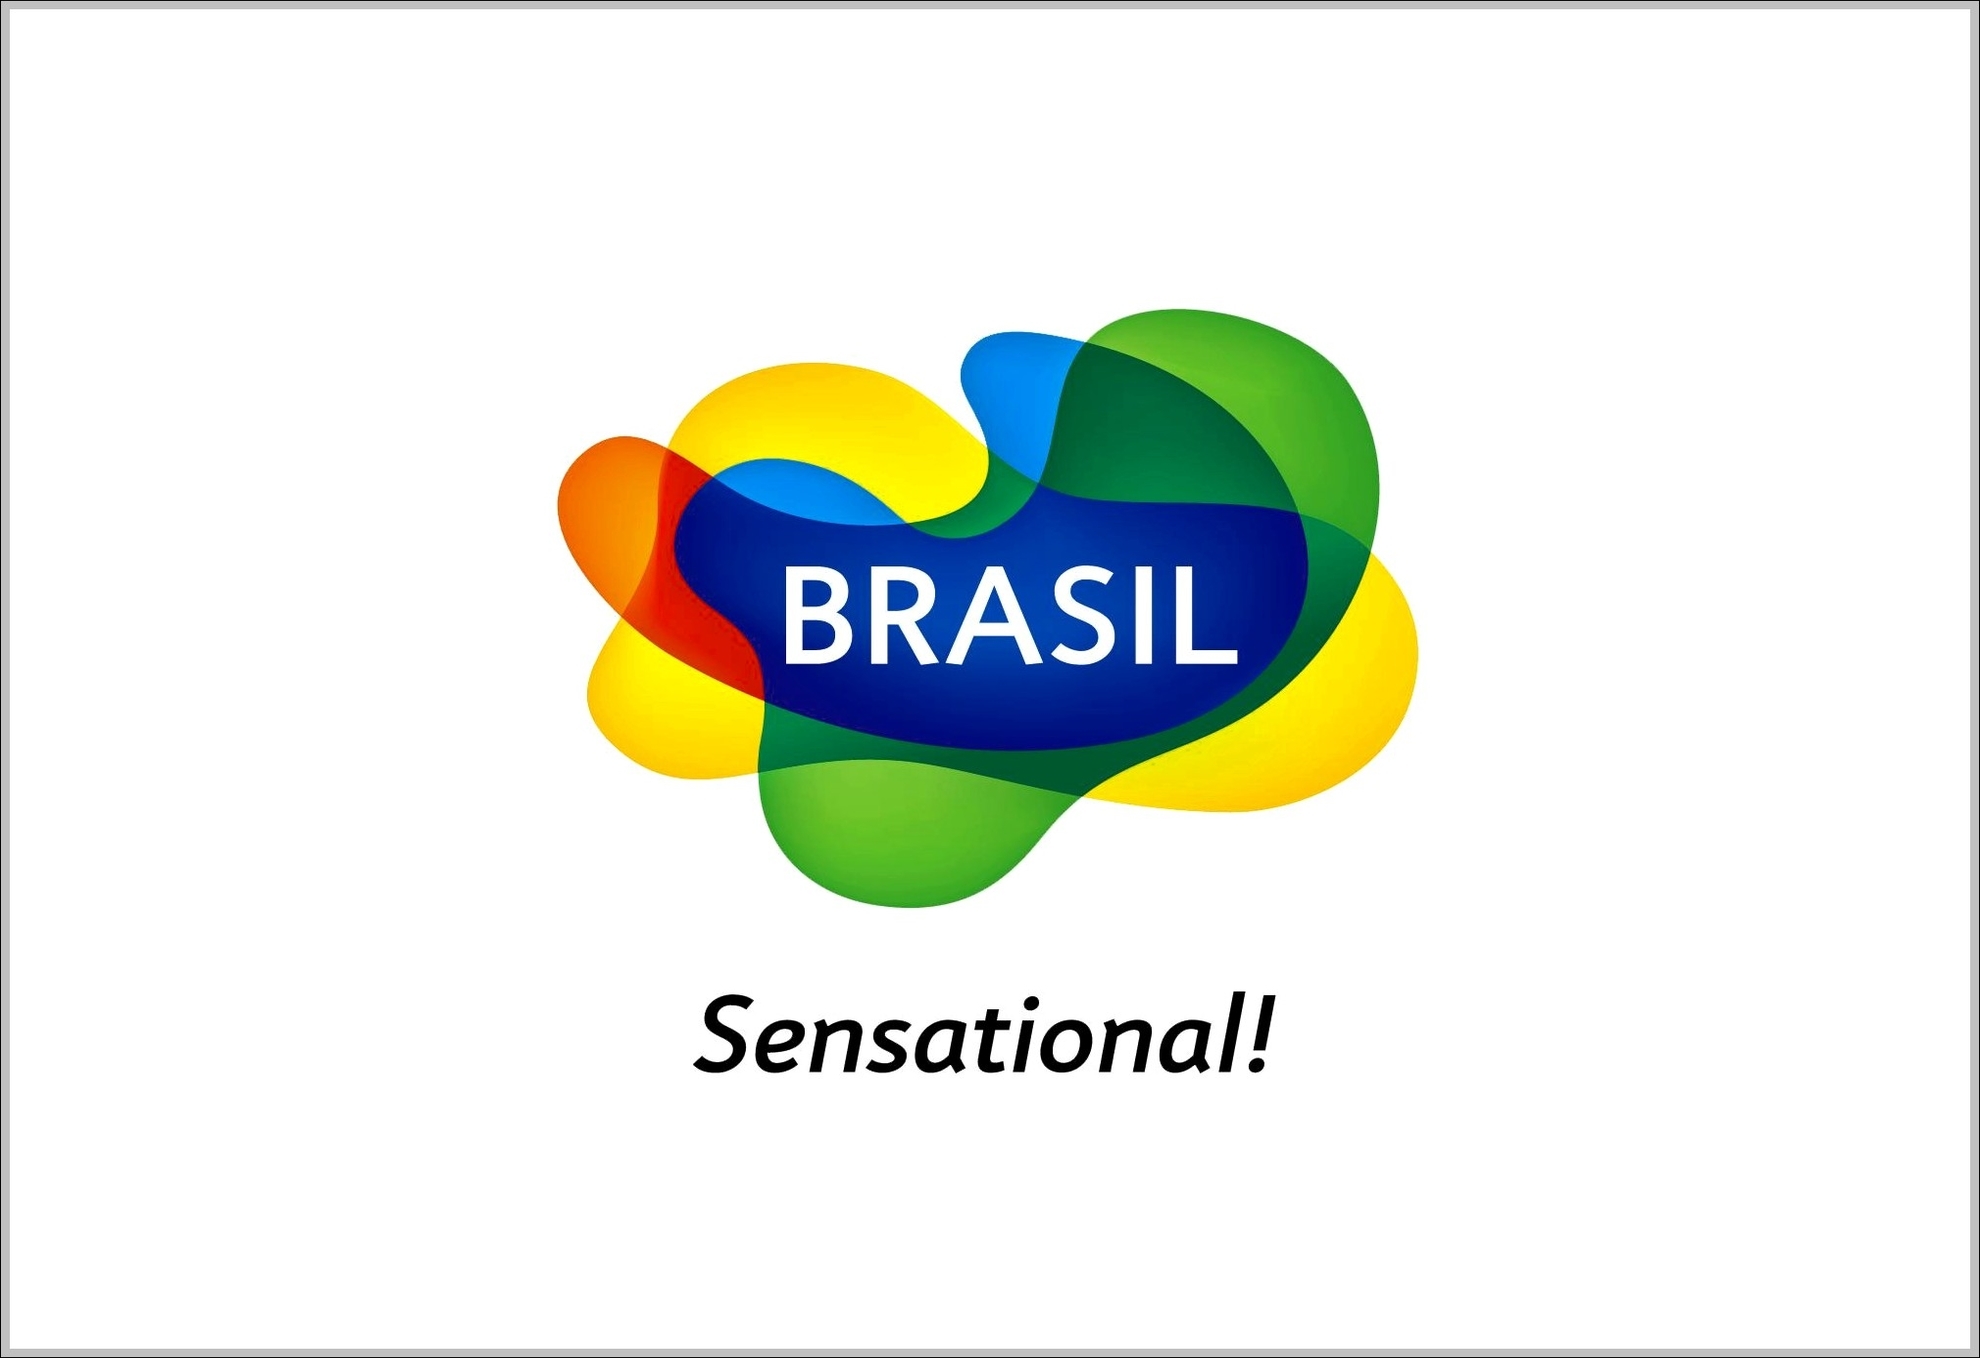 Brazil tourism logo